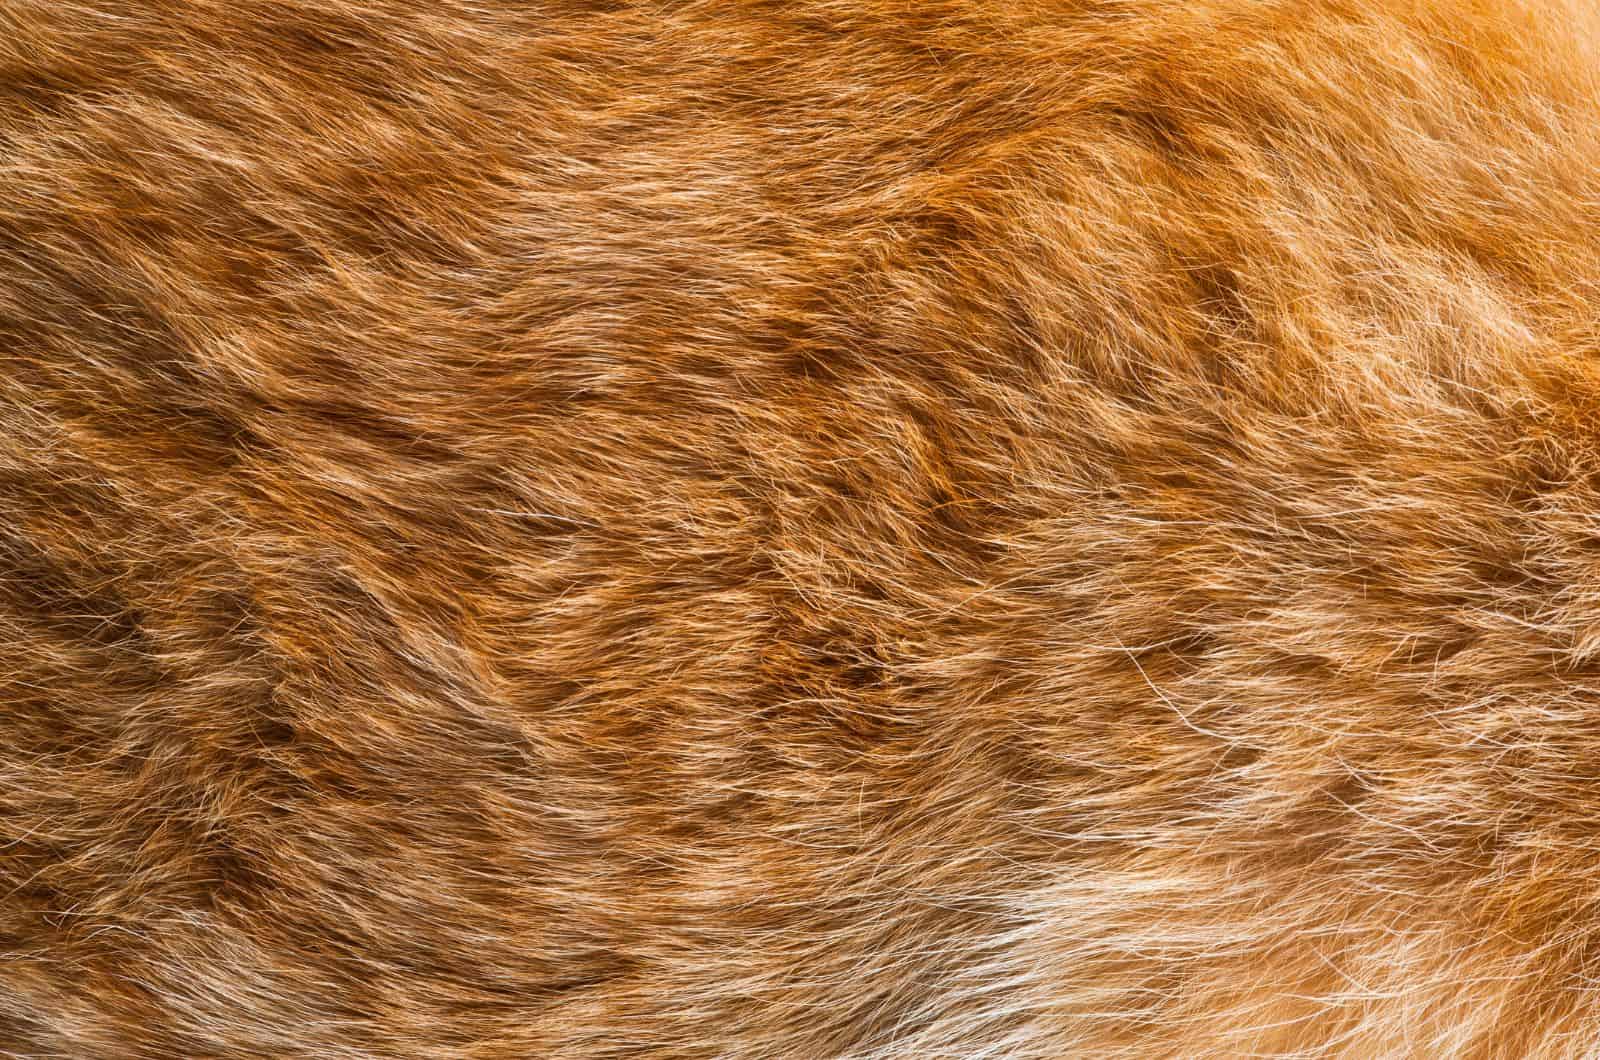 lumpy orange cat fur